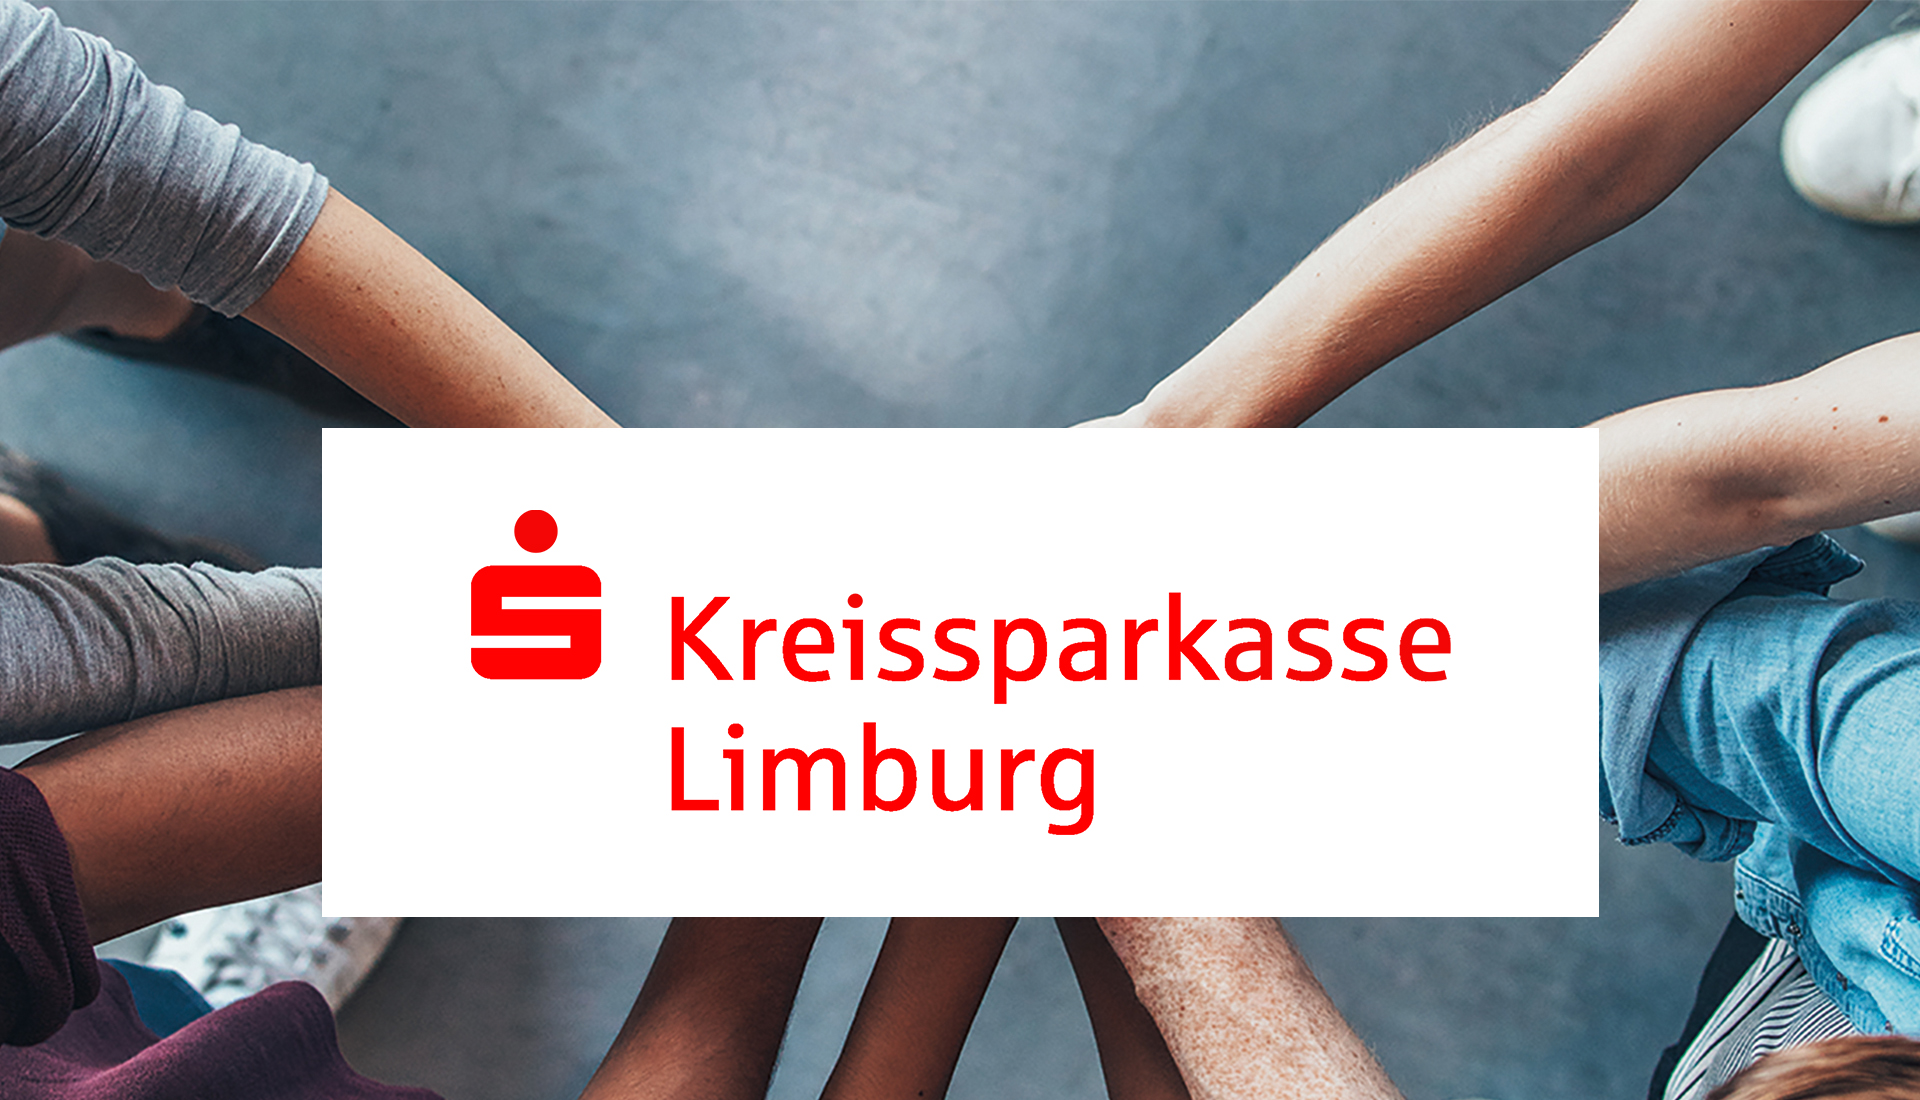 kreissparkasse-limburg-post-img